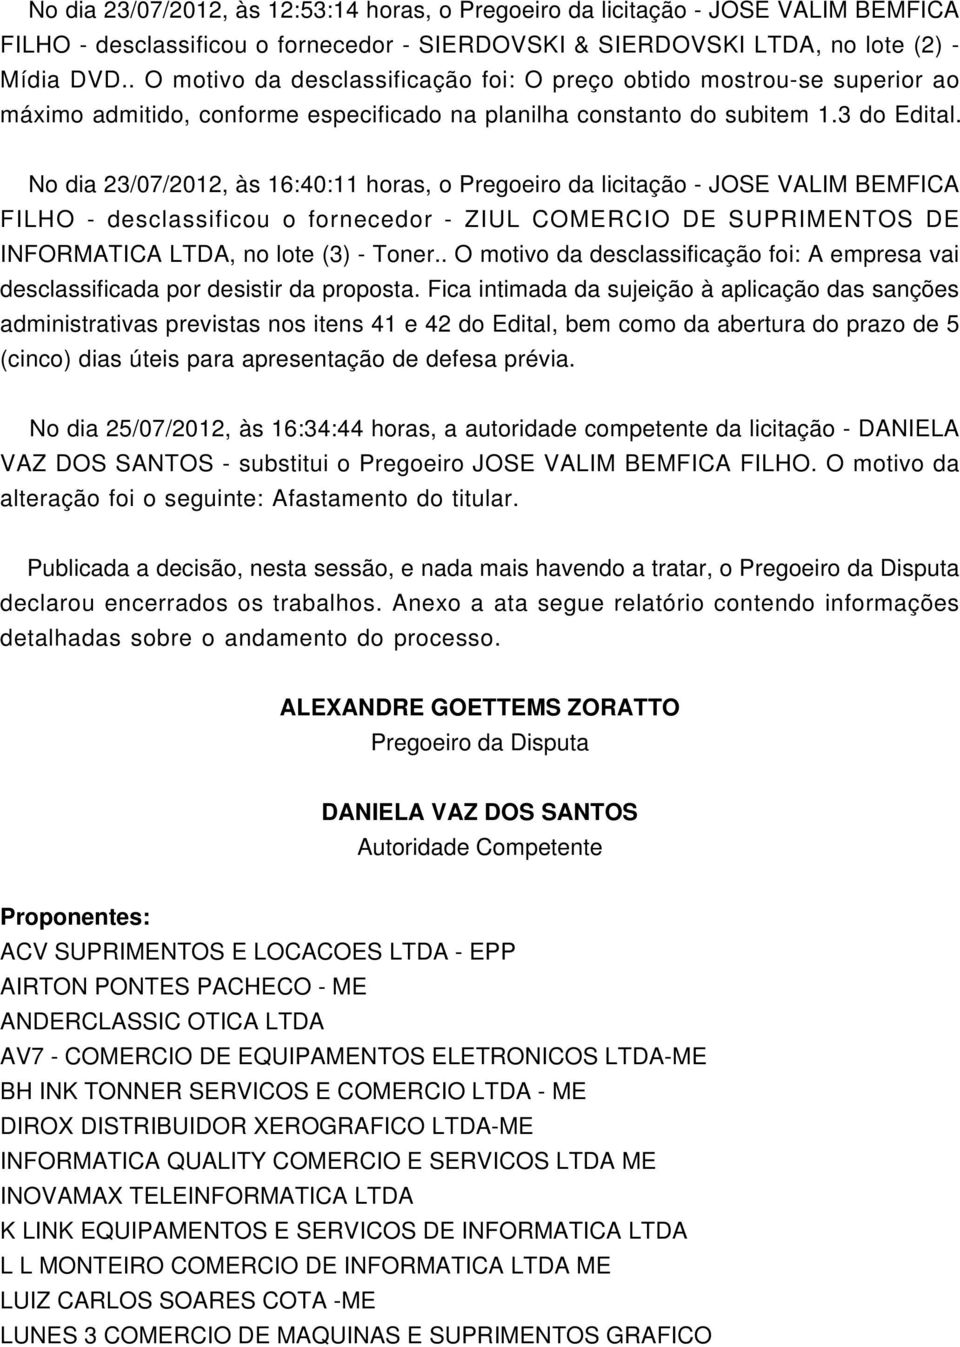 No dia 23/07/2012, às 16:40:11 horas, o Pregoeiro da licitação - JOSE VALIM BEMFICA FILHO - desclassificou o fornecedor - ZIUL COMERCIO DE SUPRIMENTOS DE INFORMATICA, no lote (3) - Toner.